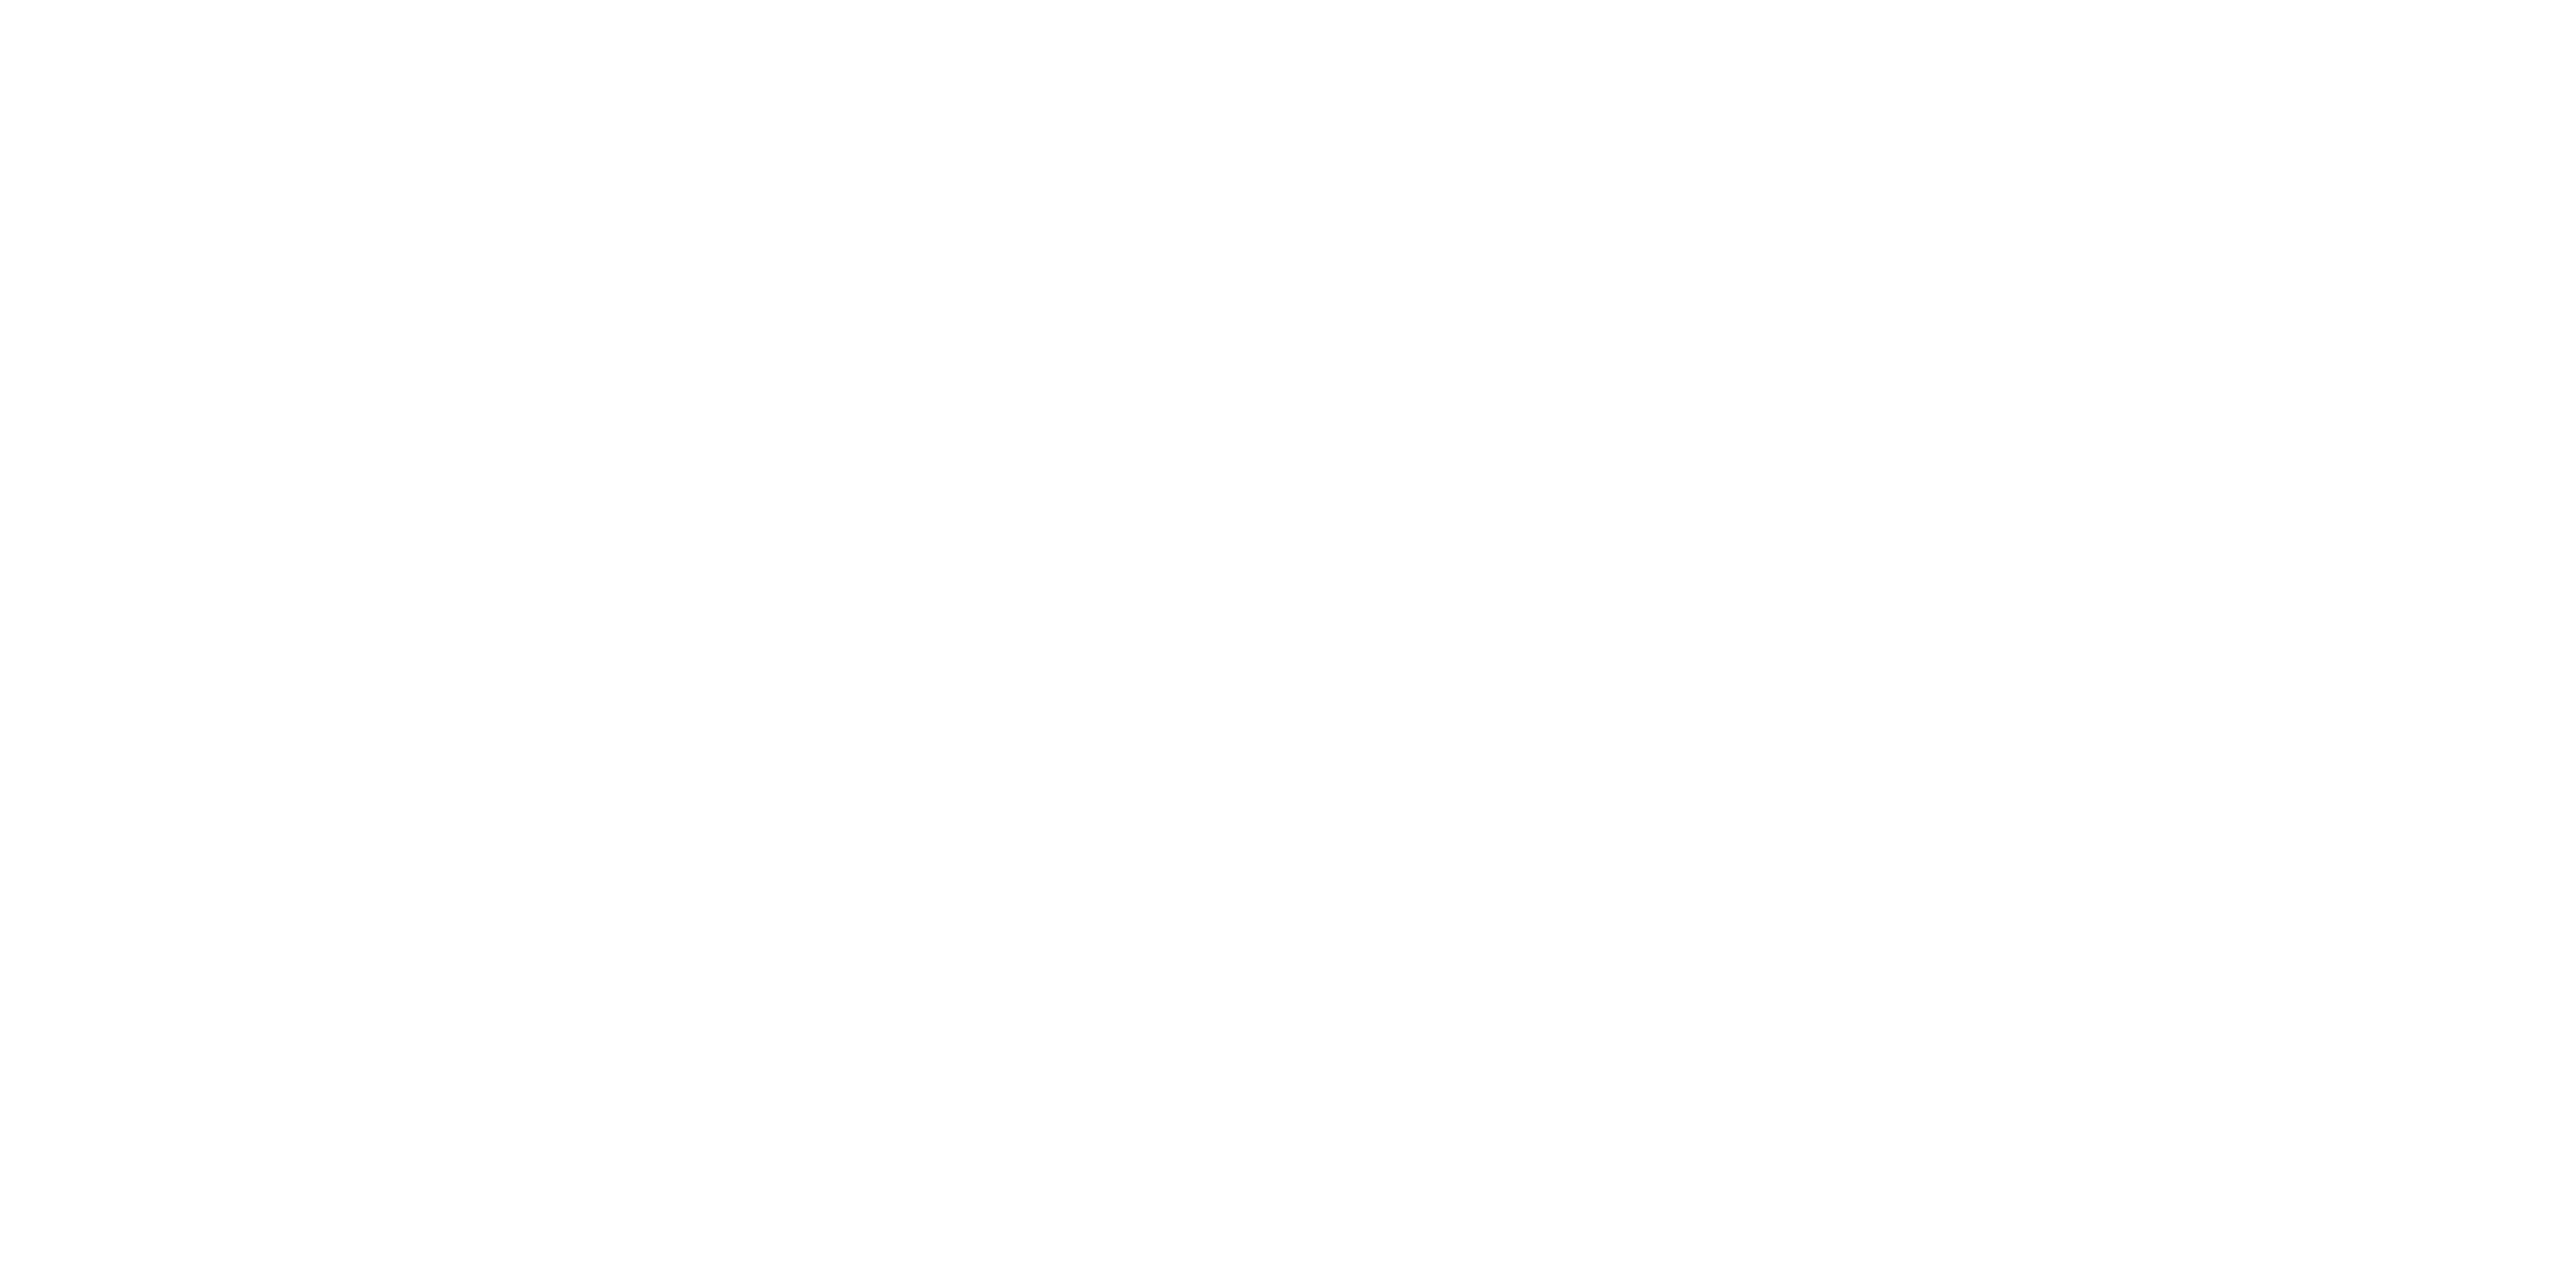 Values1